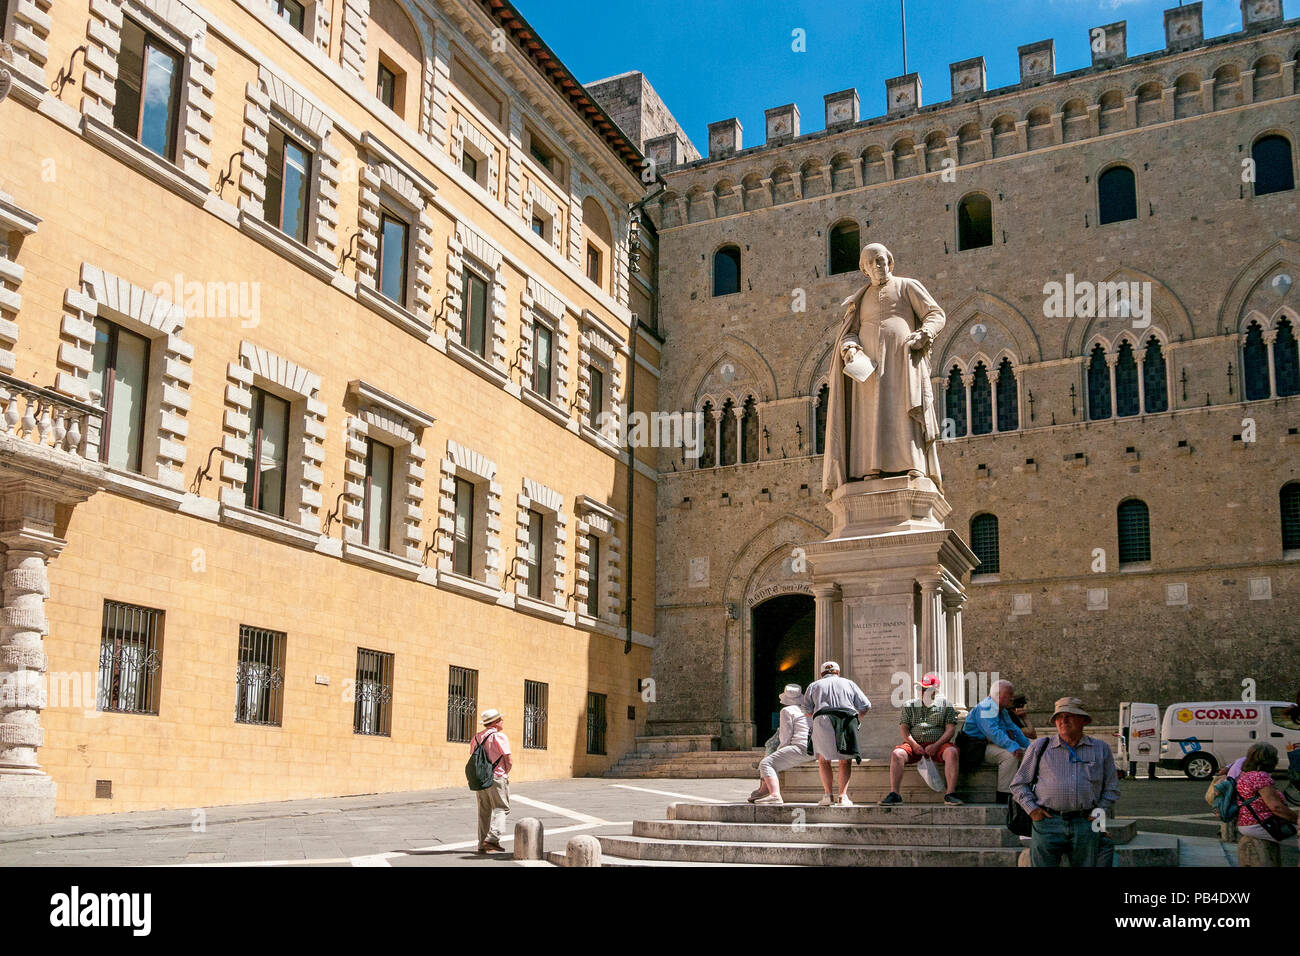 Statur von Sallustio Bandini, einem italienischen Archdeacon, in der mittelalterlichen Piazza Salambeni, Siena, Toskana, Italien Stockfoto